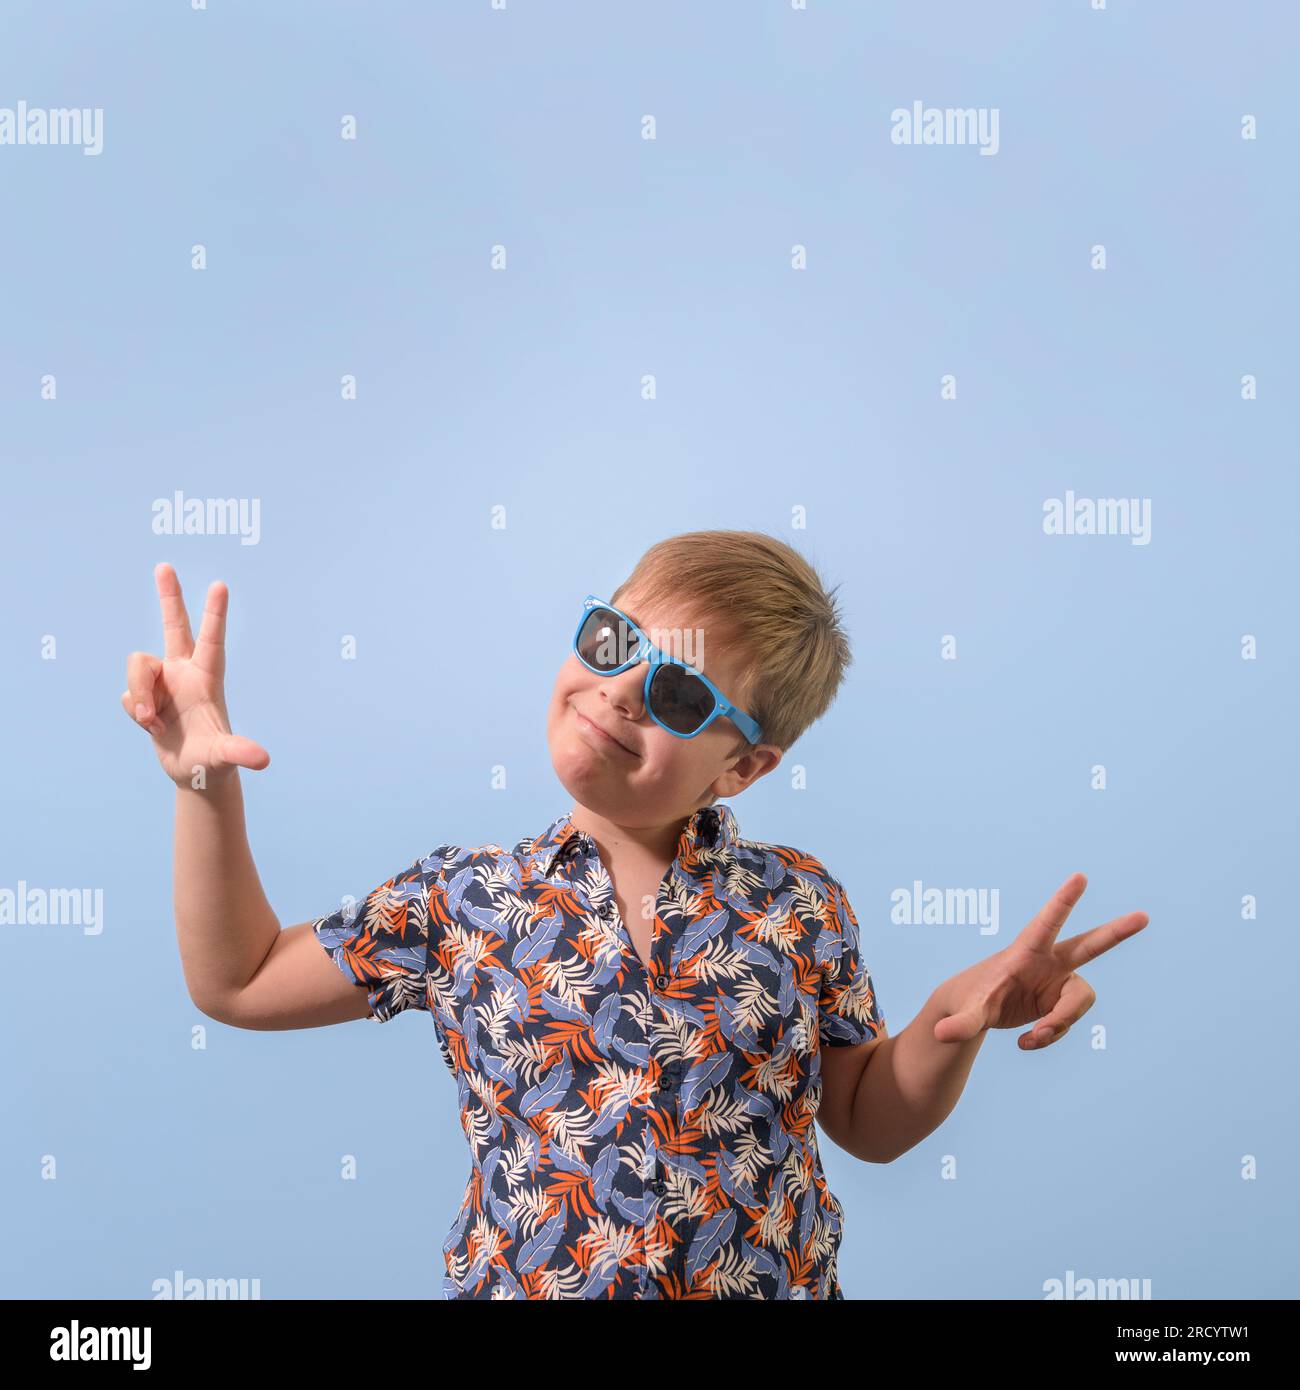 Un adolescent en chemise hawaïenne et lunettes de soleil. Les mains levées se réjouissent de rire de la caméra. Format carré Banque D'Images